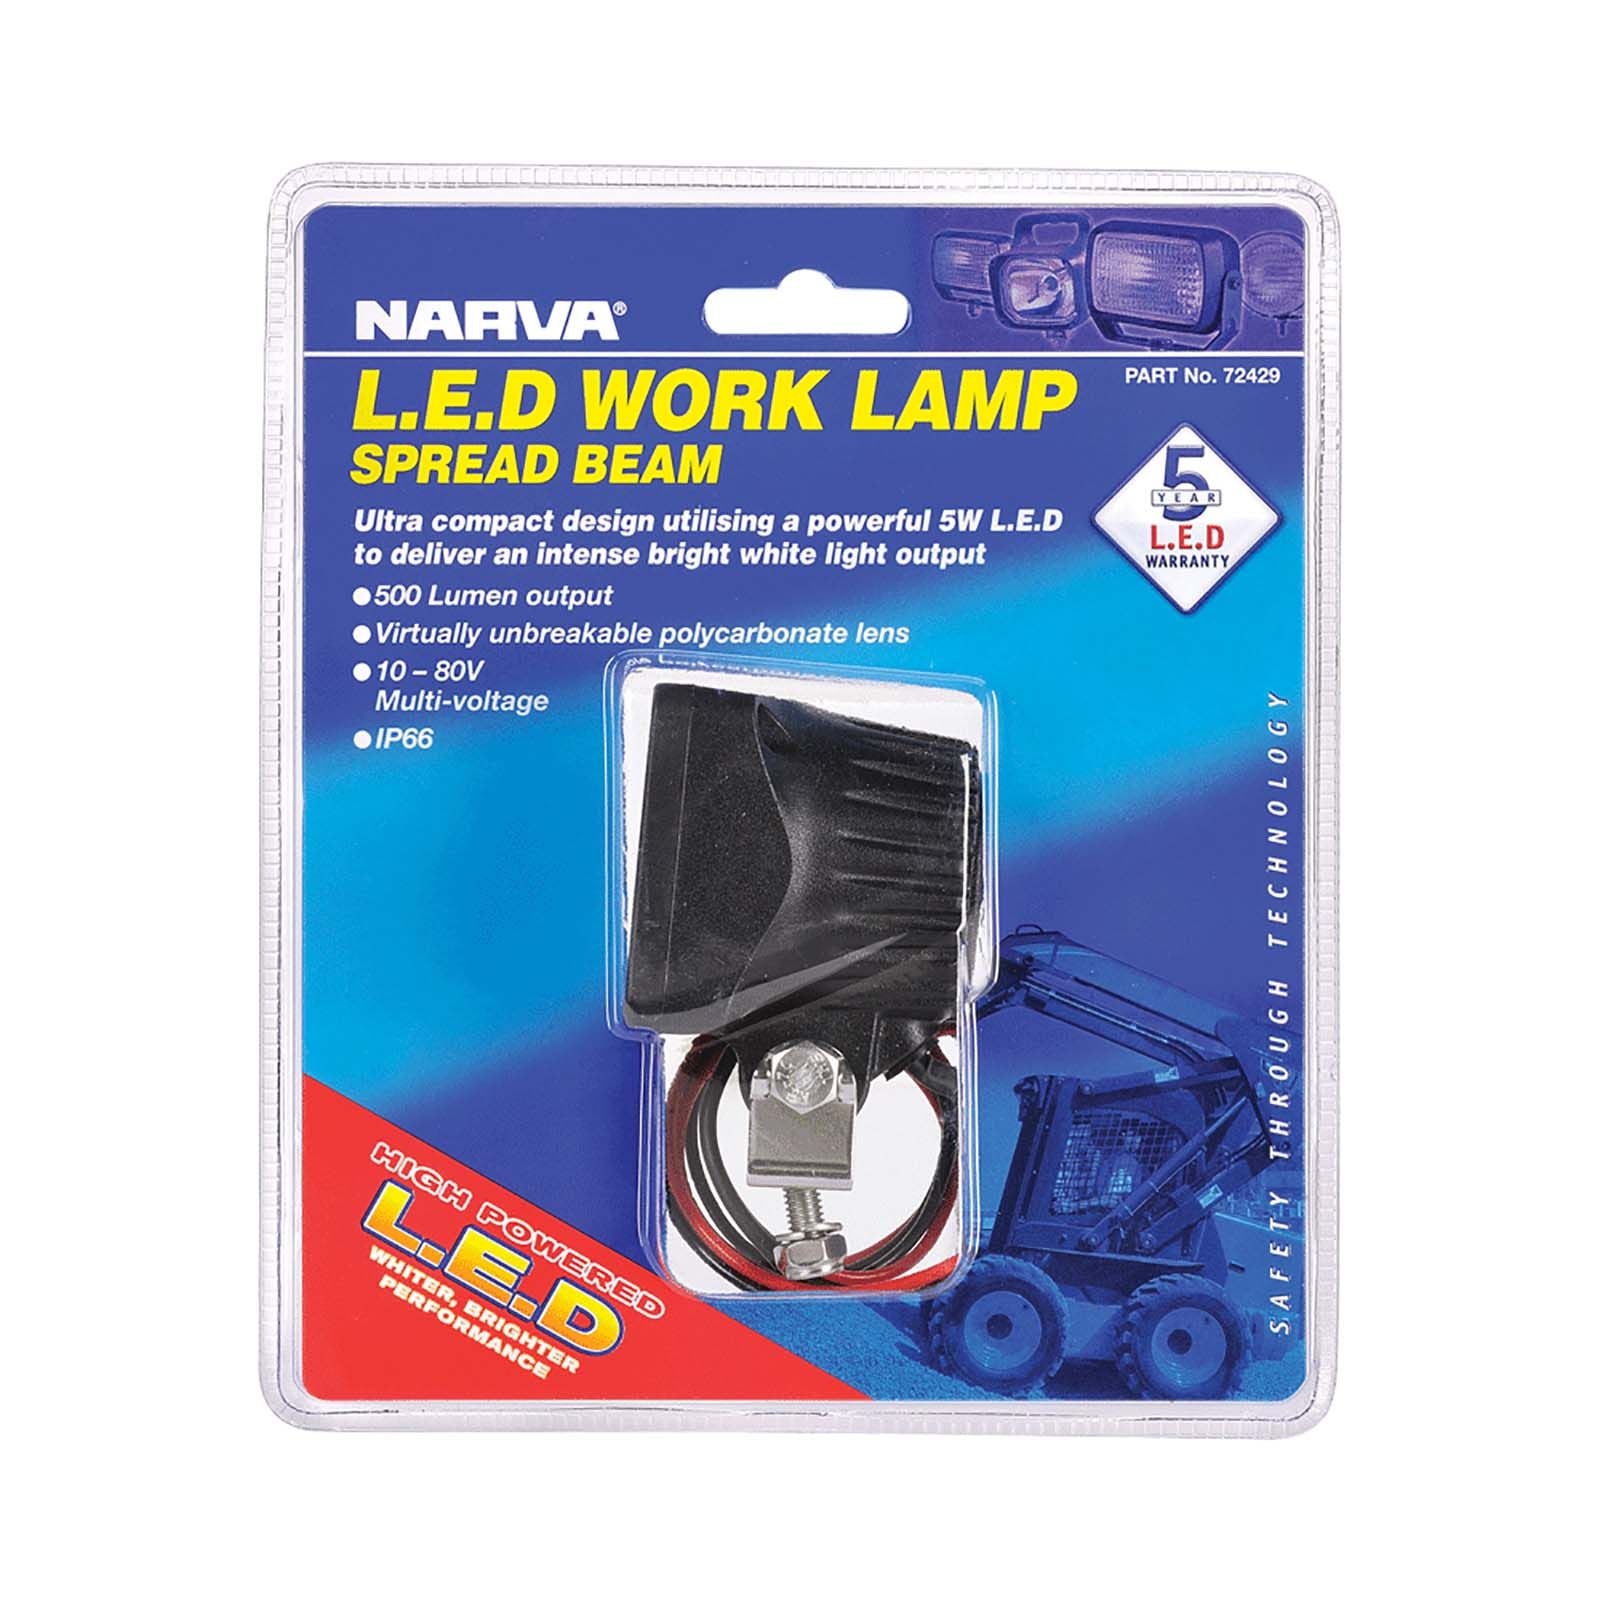 10-80V LED Work Lamp - Trek Hardware